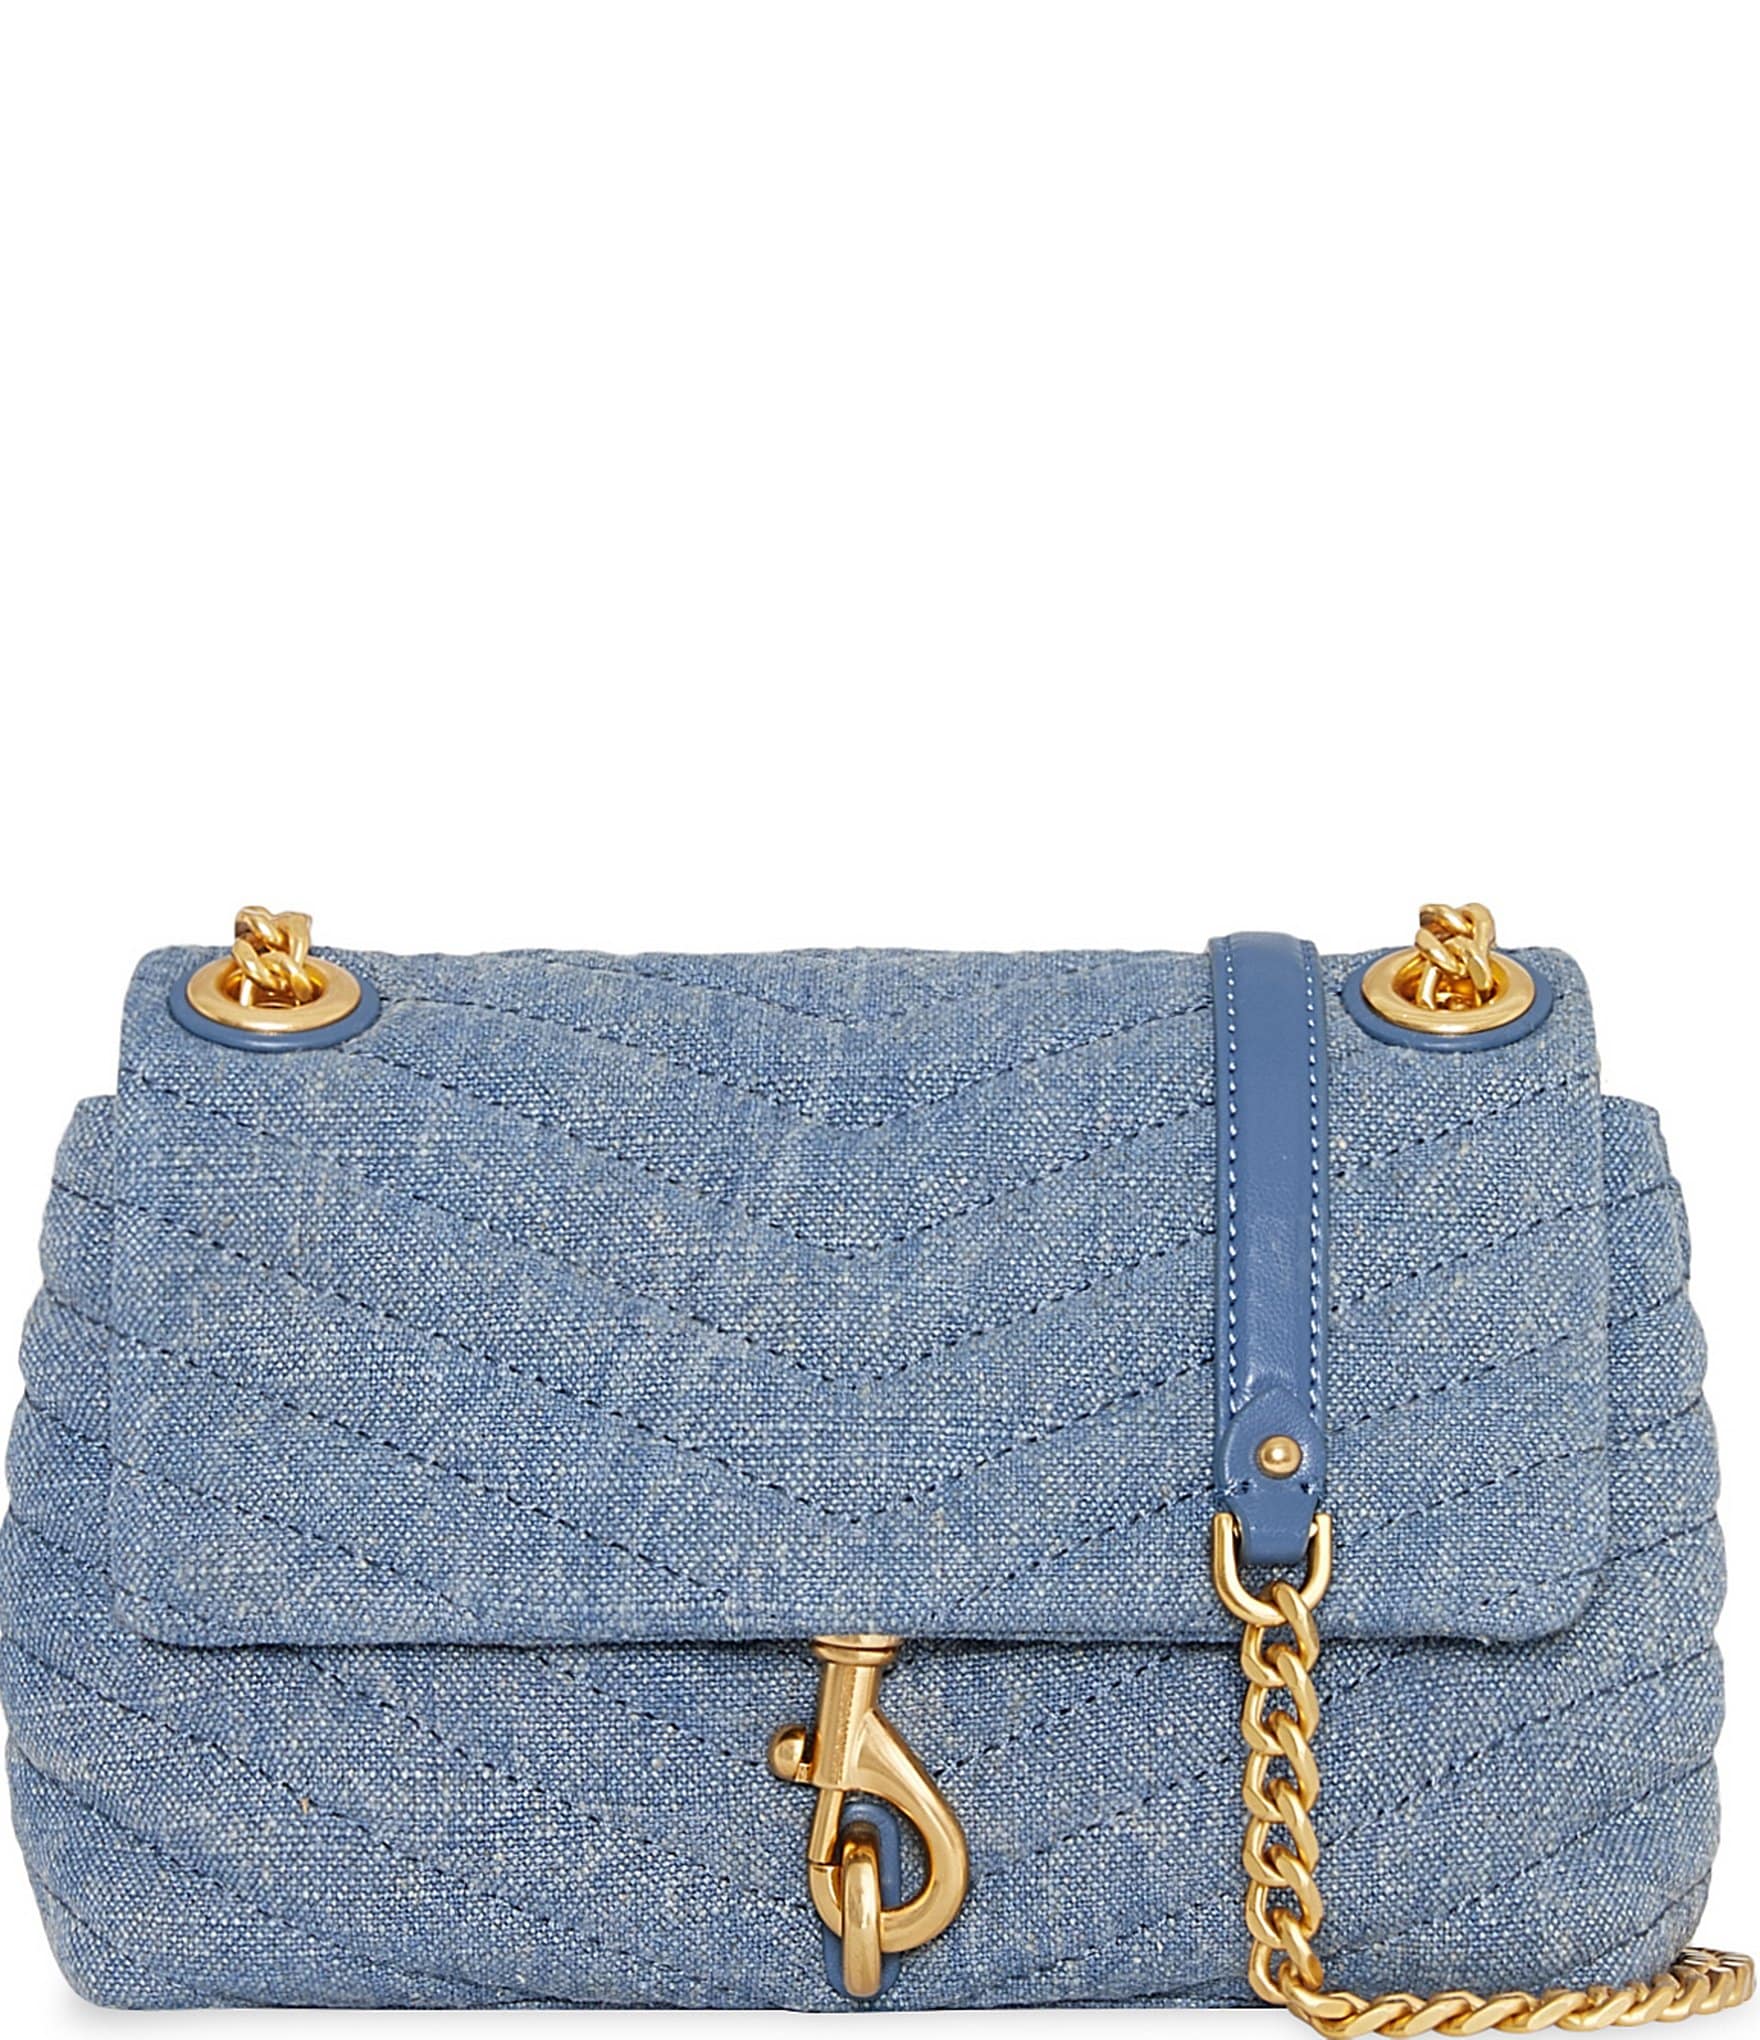 Chanel Denim Bag 2021 - 2 For Sale on 1stDibs | denim chanel bag, demin  chanel bag